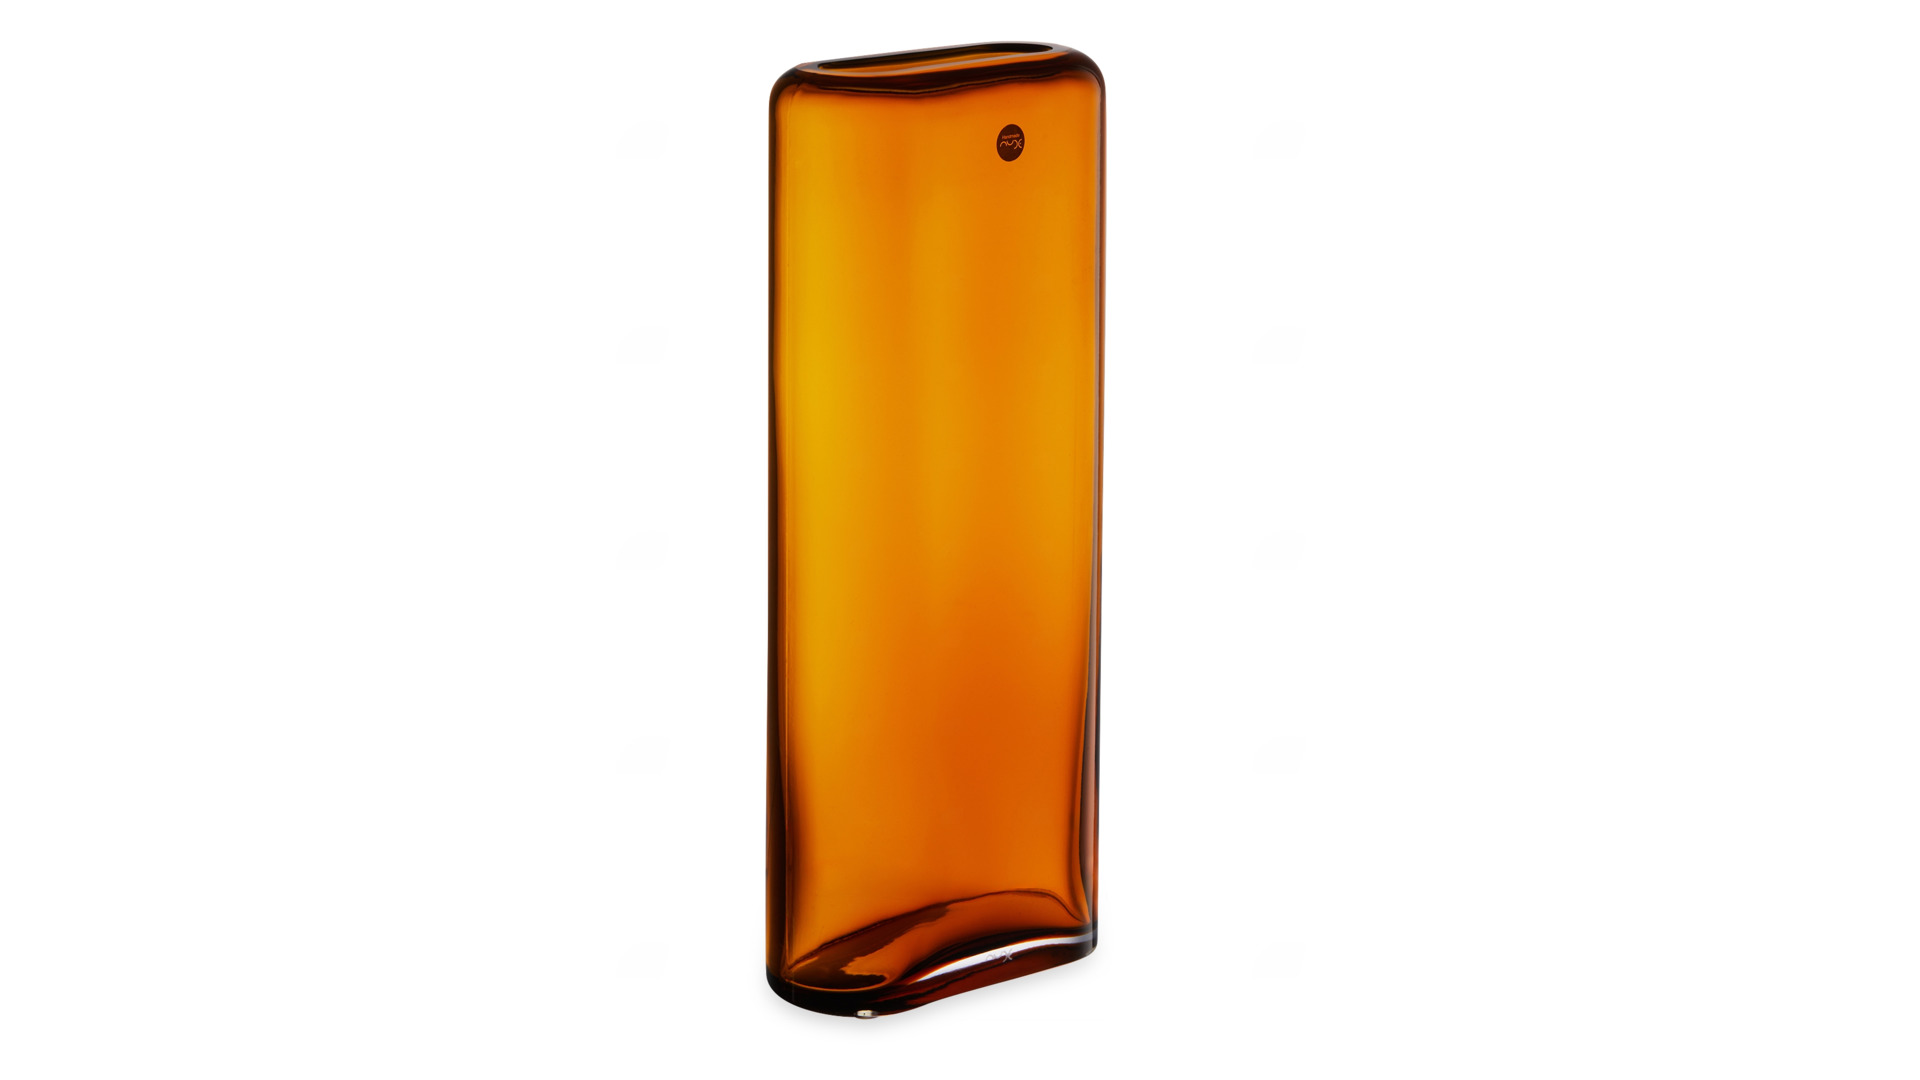 Ваза Nude Glass Слои 32,6 см, стекло хрустальное, янтарная